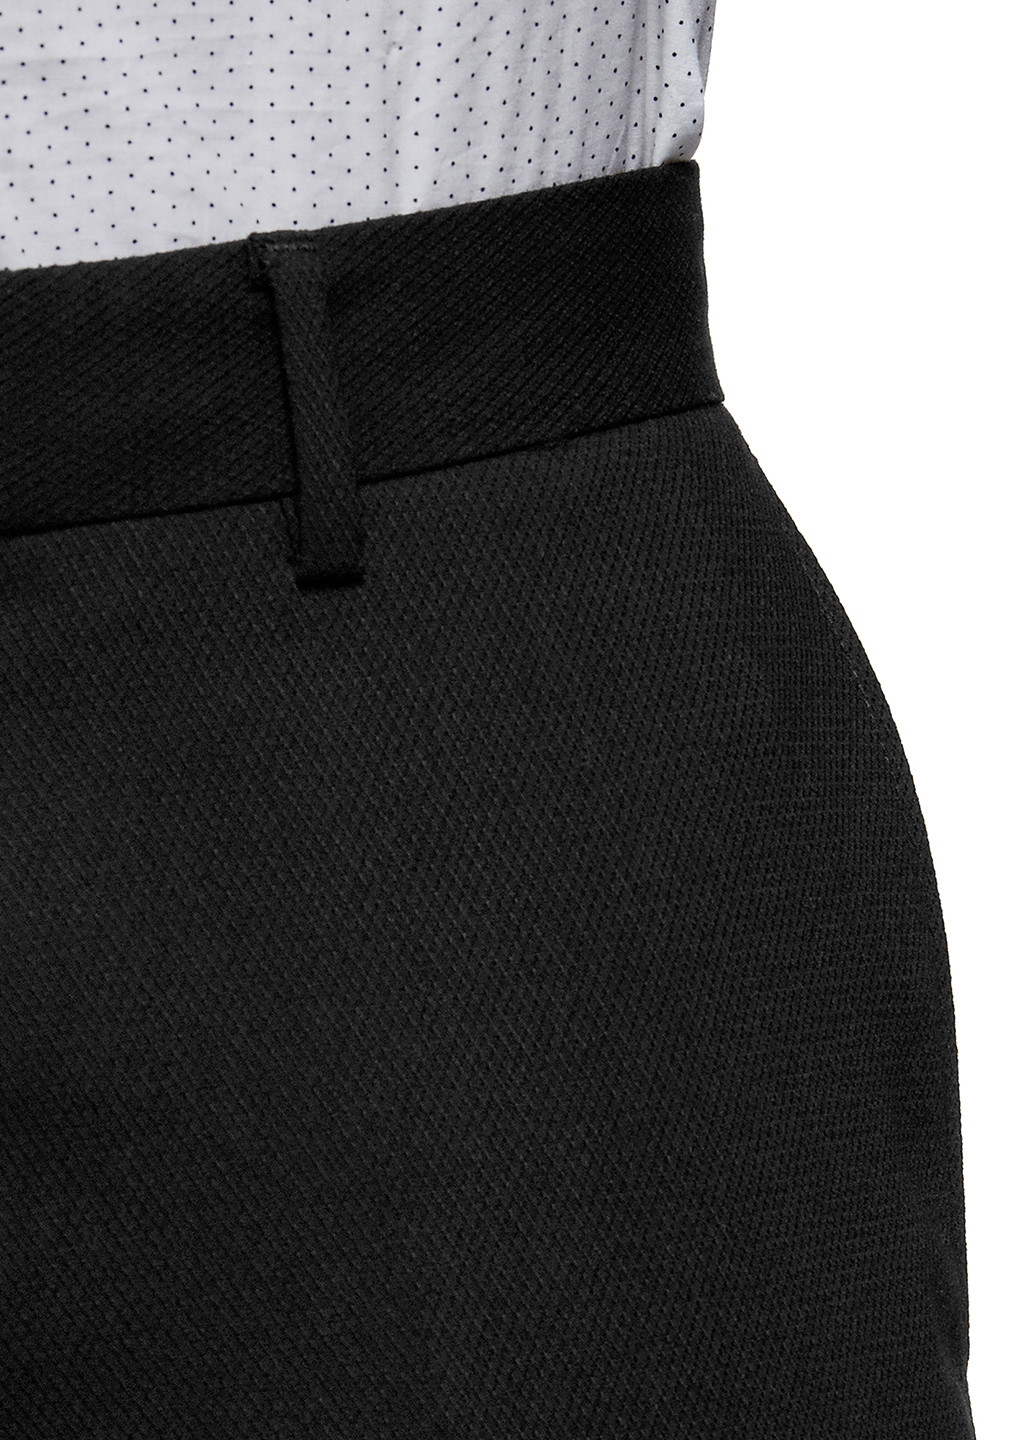 Черные классические демисезонные зауженные брюки Oodji